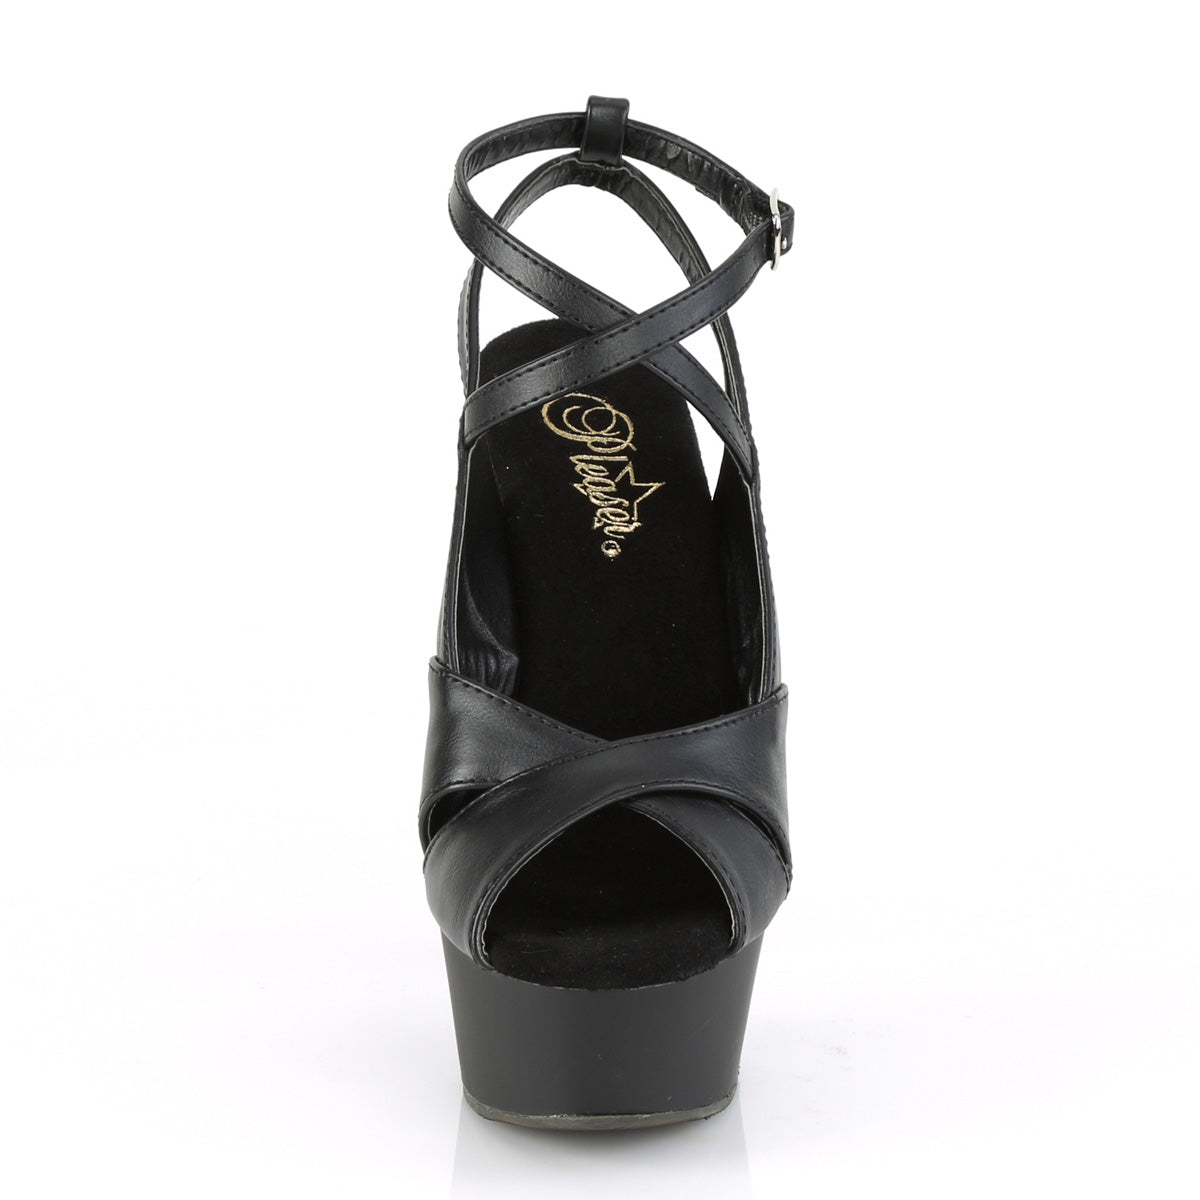 Pleaser Womens Sandals DELIGHT-632 Blk Faux Leather/Blk Matte